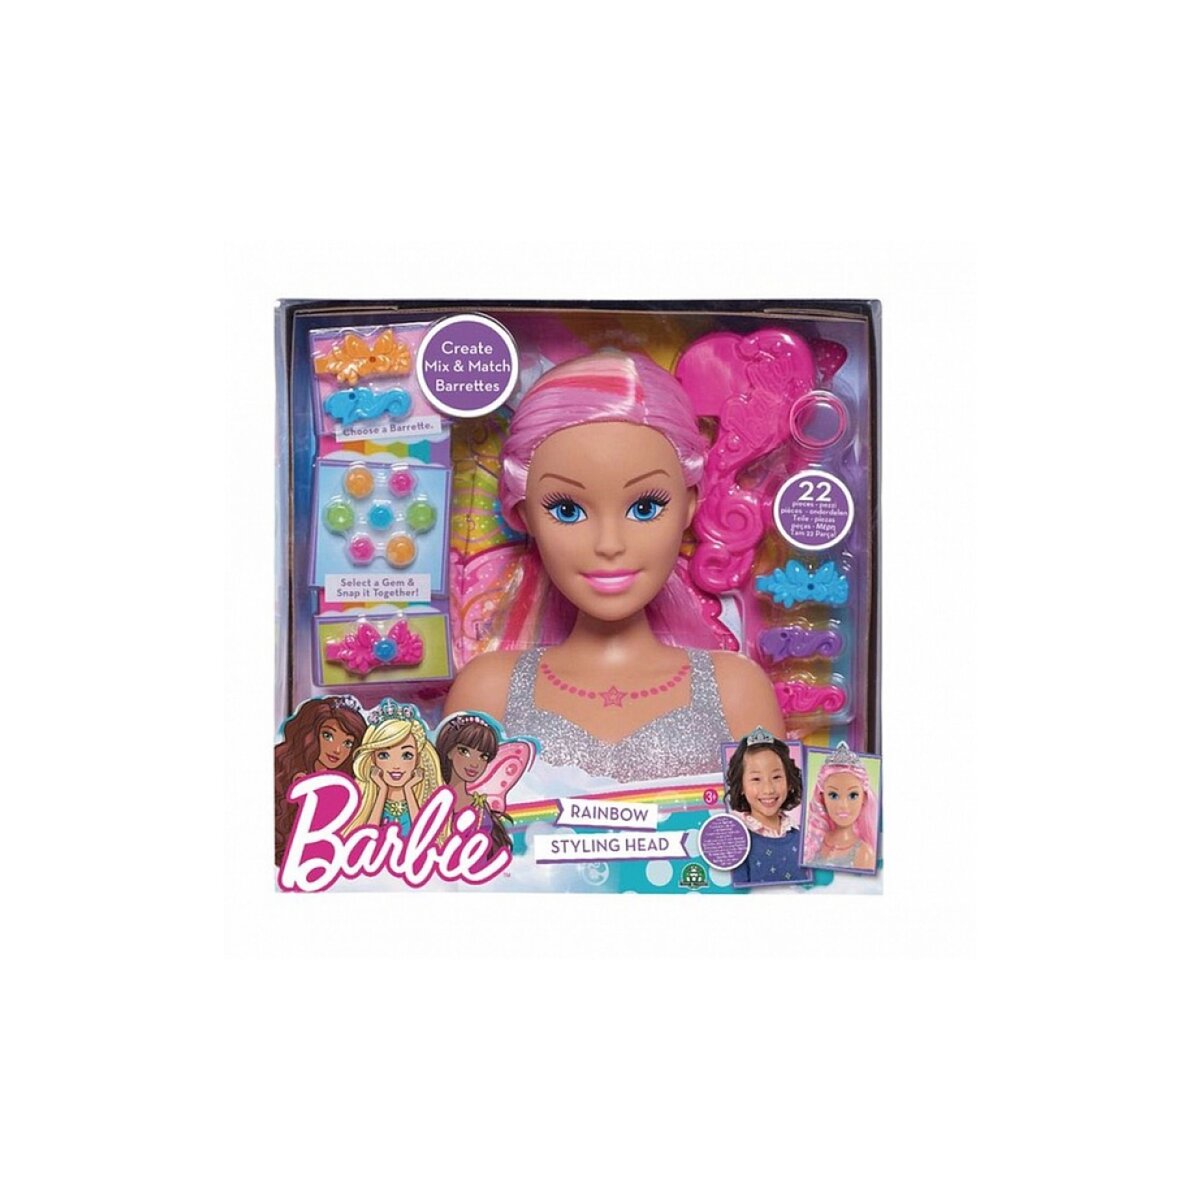 Giochi Preziosi Barbie Tete a coiffer dreamtopia pas cher 